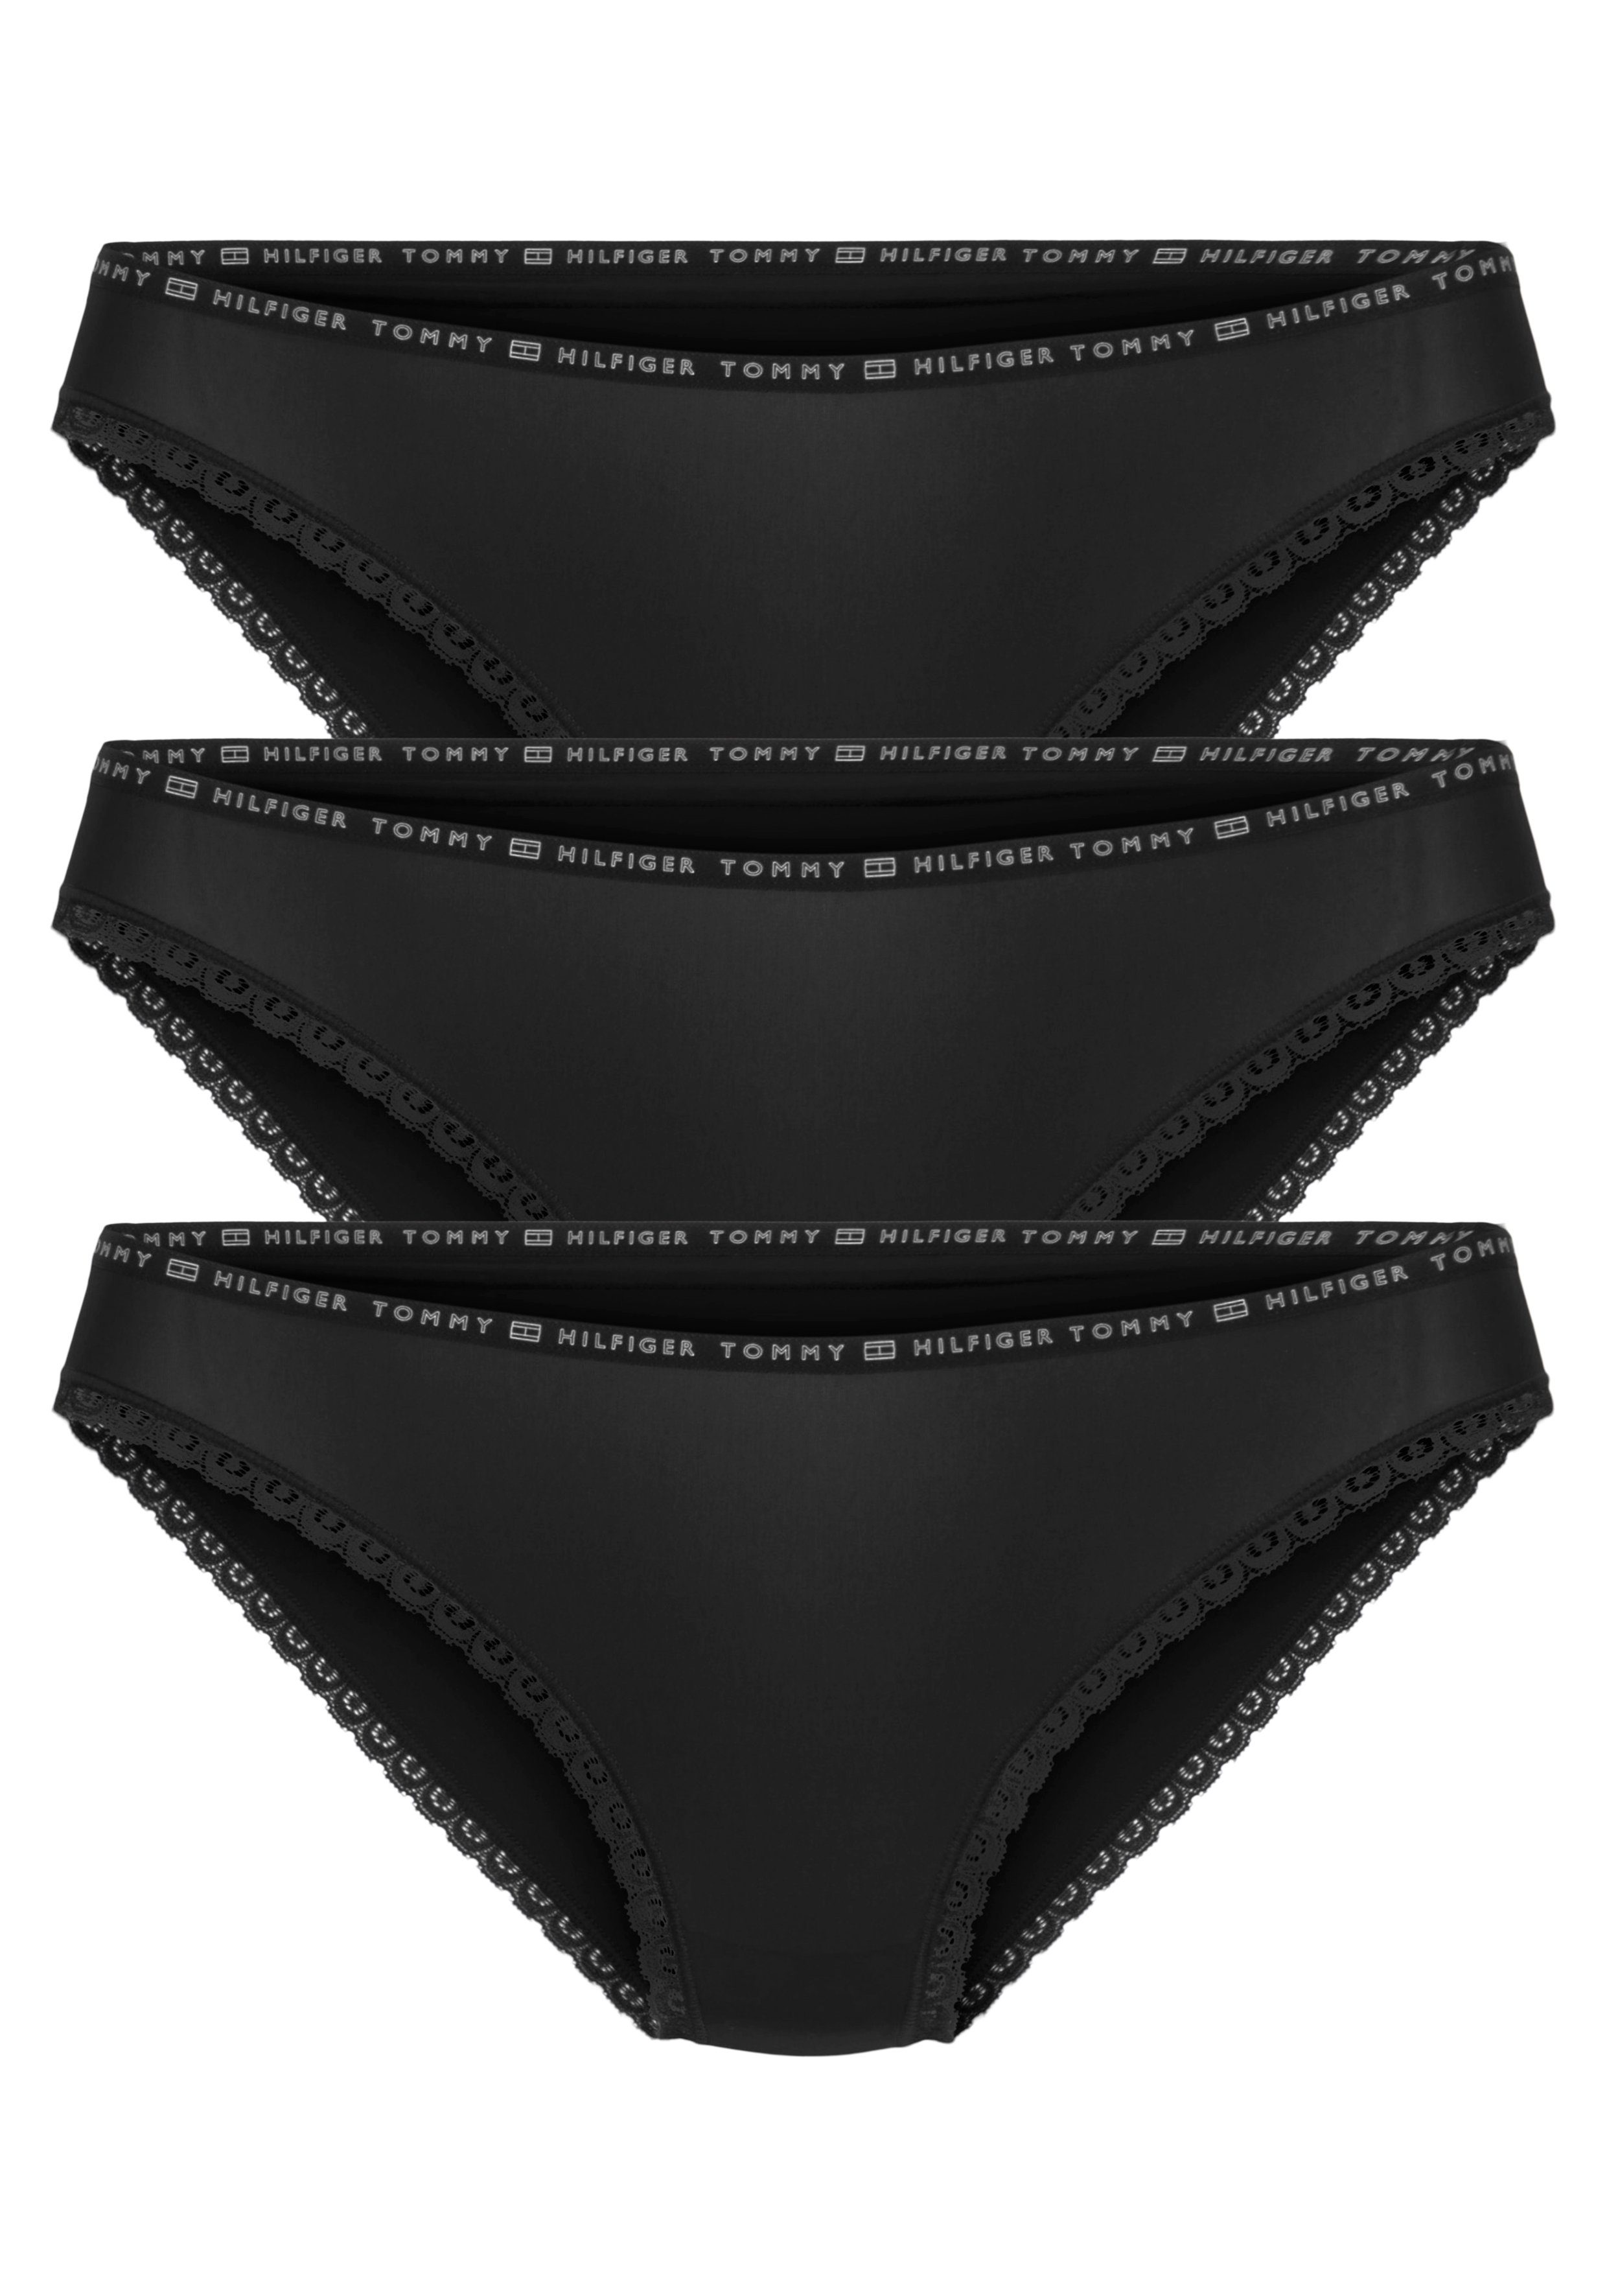 Bikinislip BIKINI Tommy 3P 6 Tommy mit Hilfiger Spitzenkante Black/Black/Black Underwear Hilfiger 3er-Pack) (Packung, Logo-Elastiktape